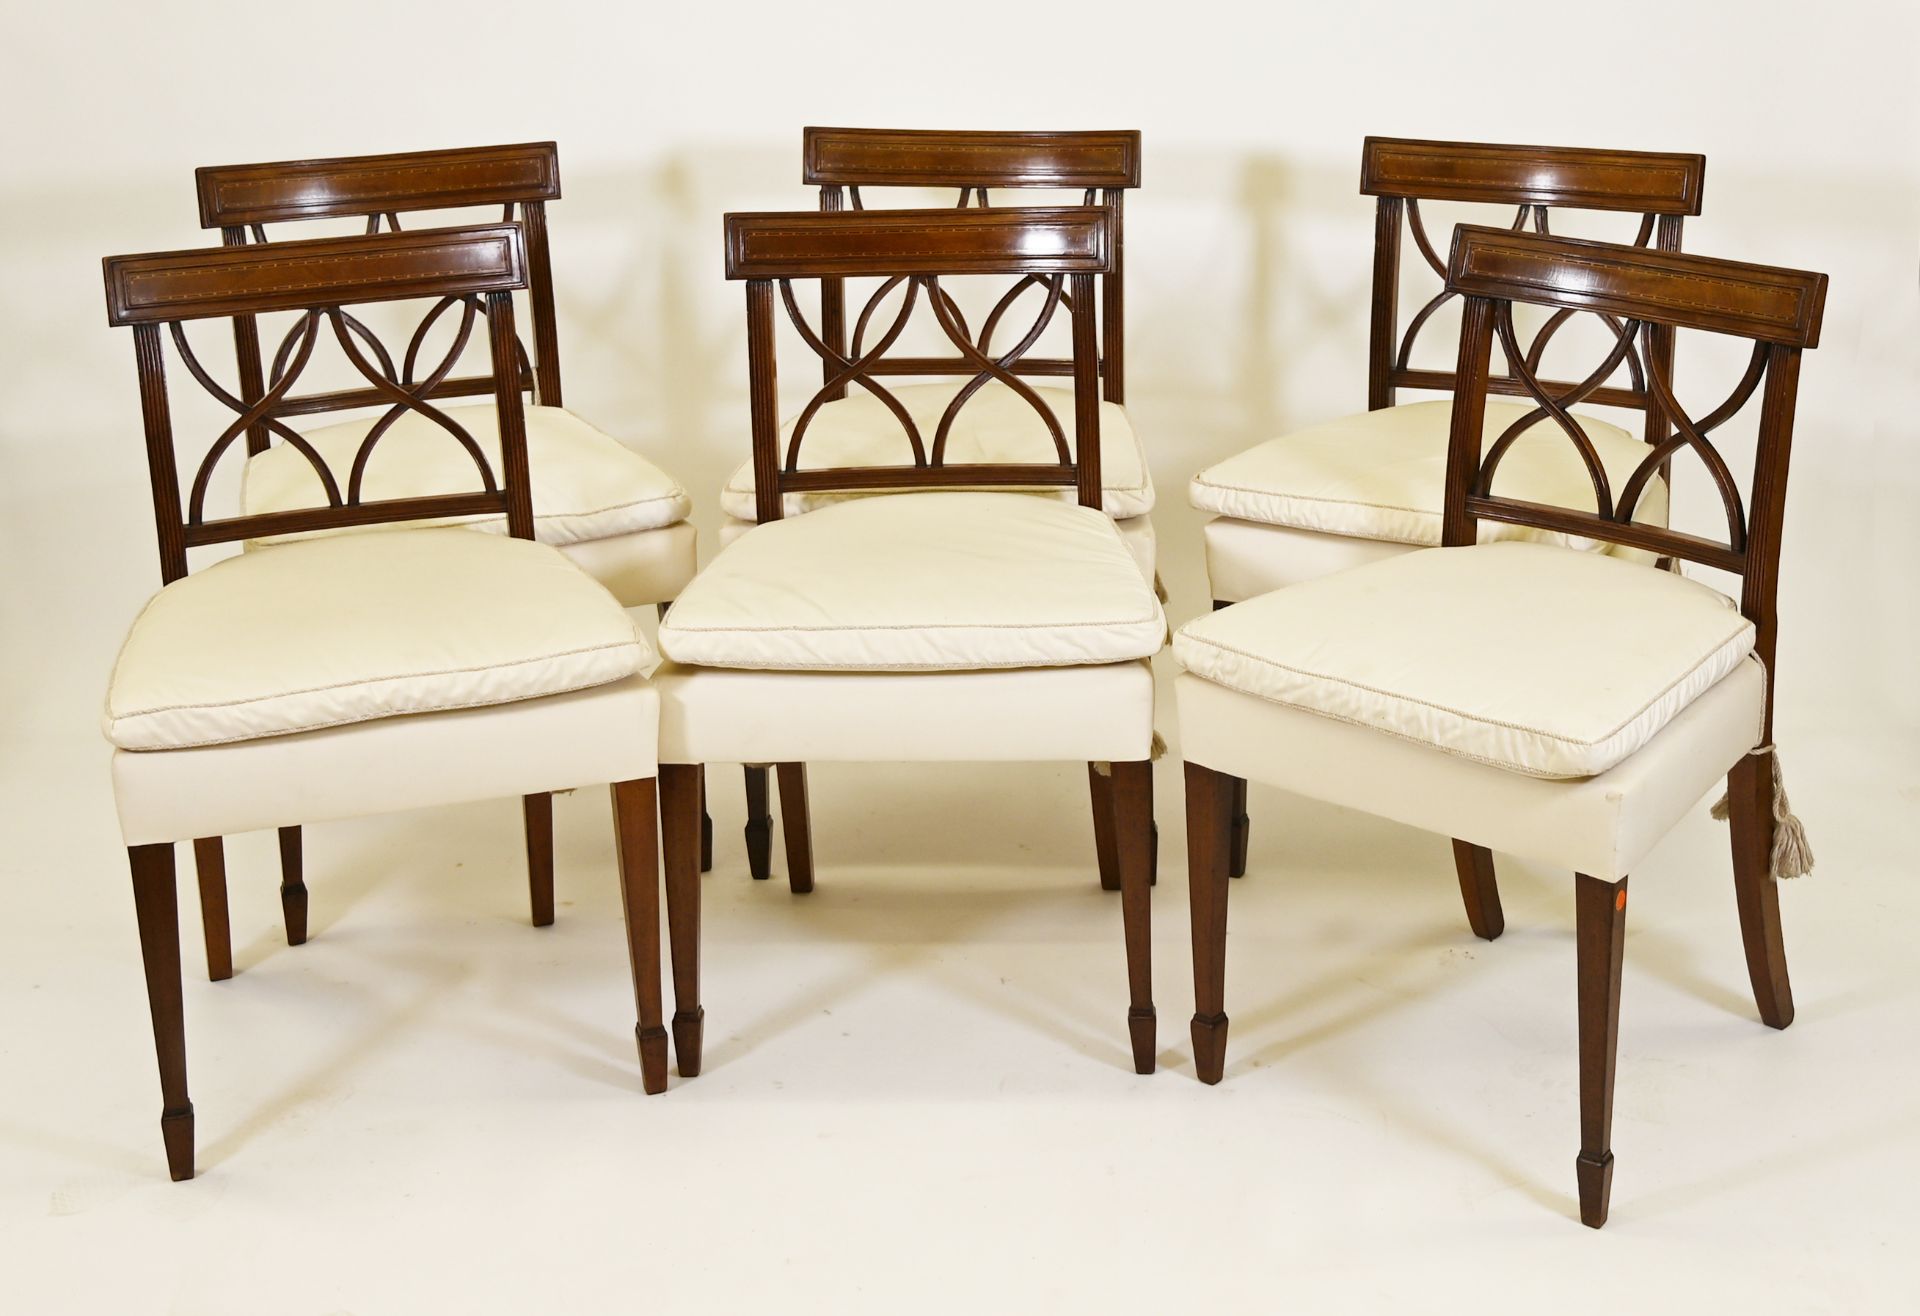 Sechs Stühle, englischer Stil